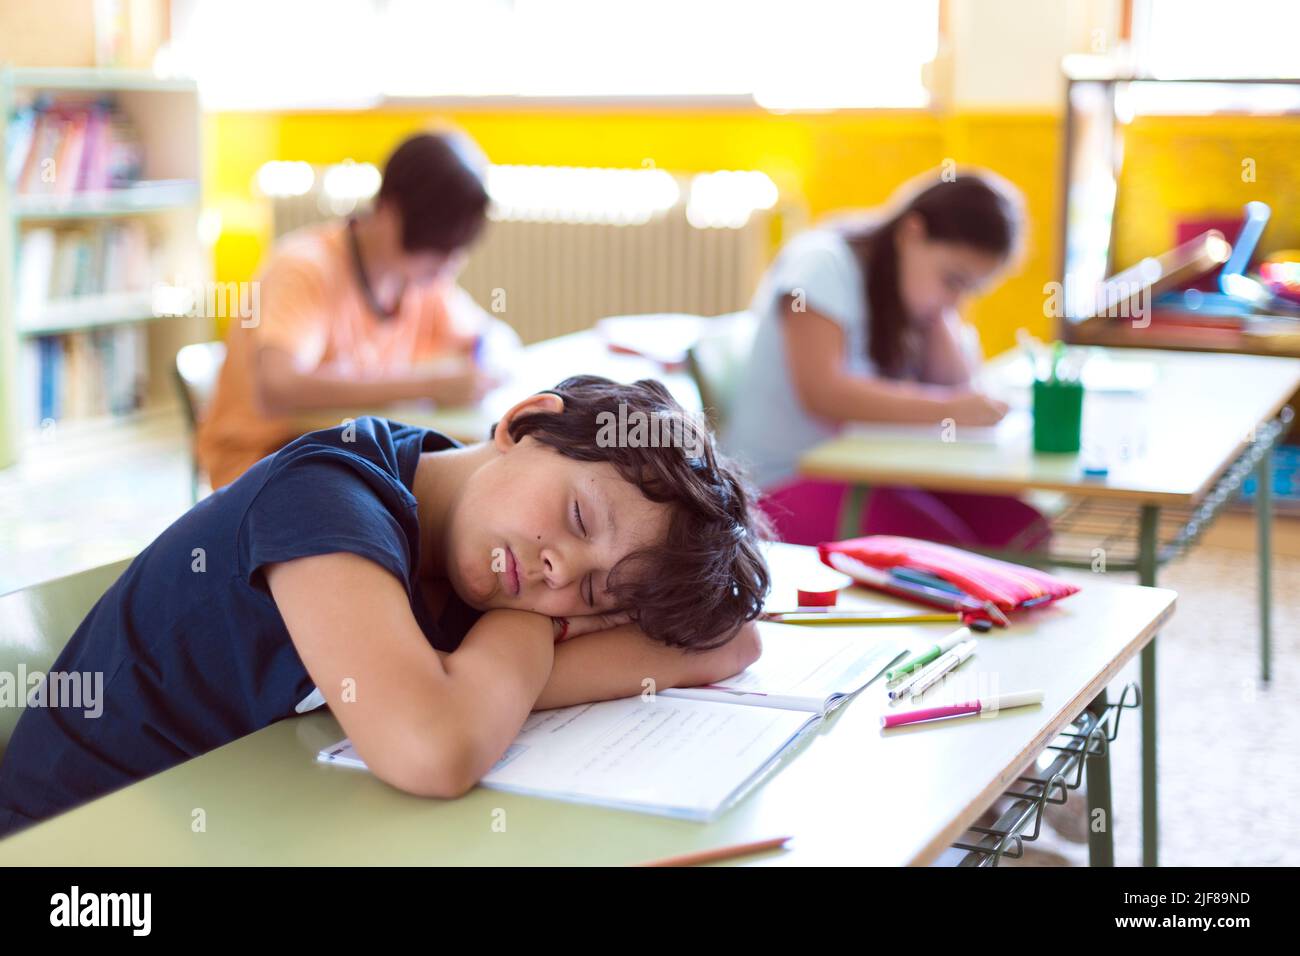 Enfant caucasien dormant en classe pendant que ses camarades de classe font leurs devoirs. Banque D'Images